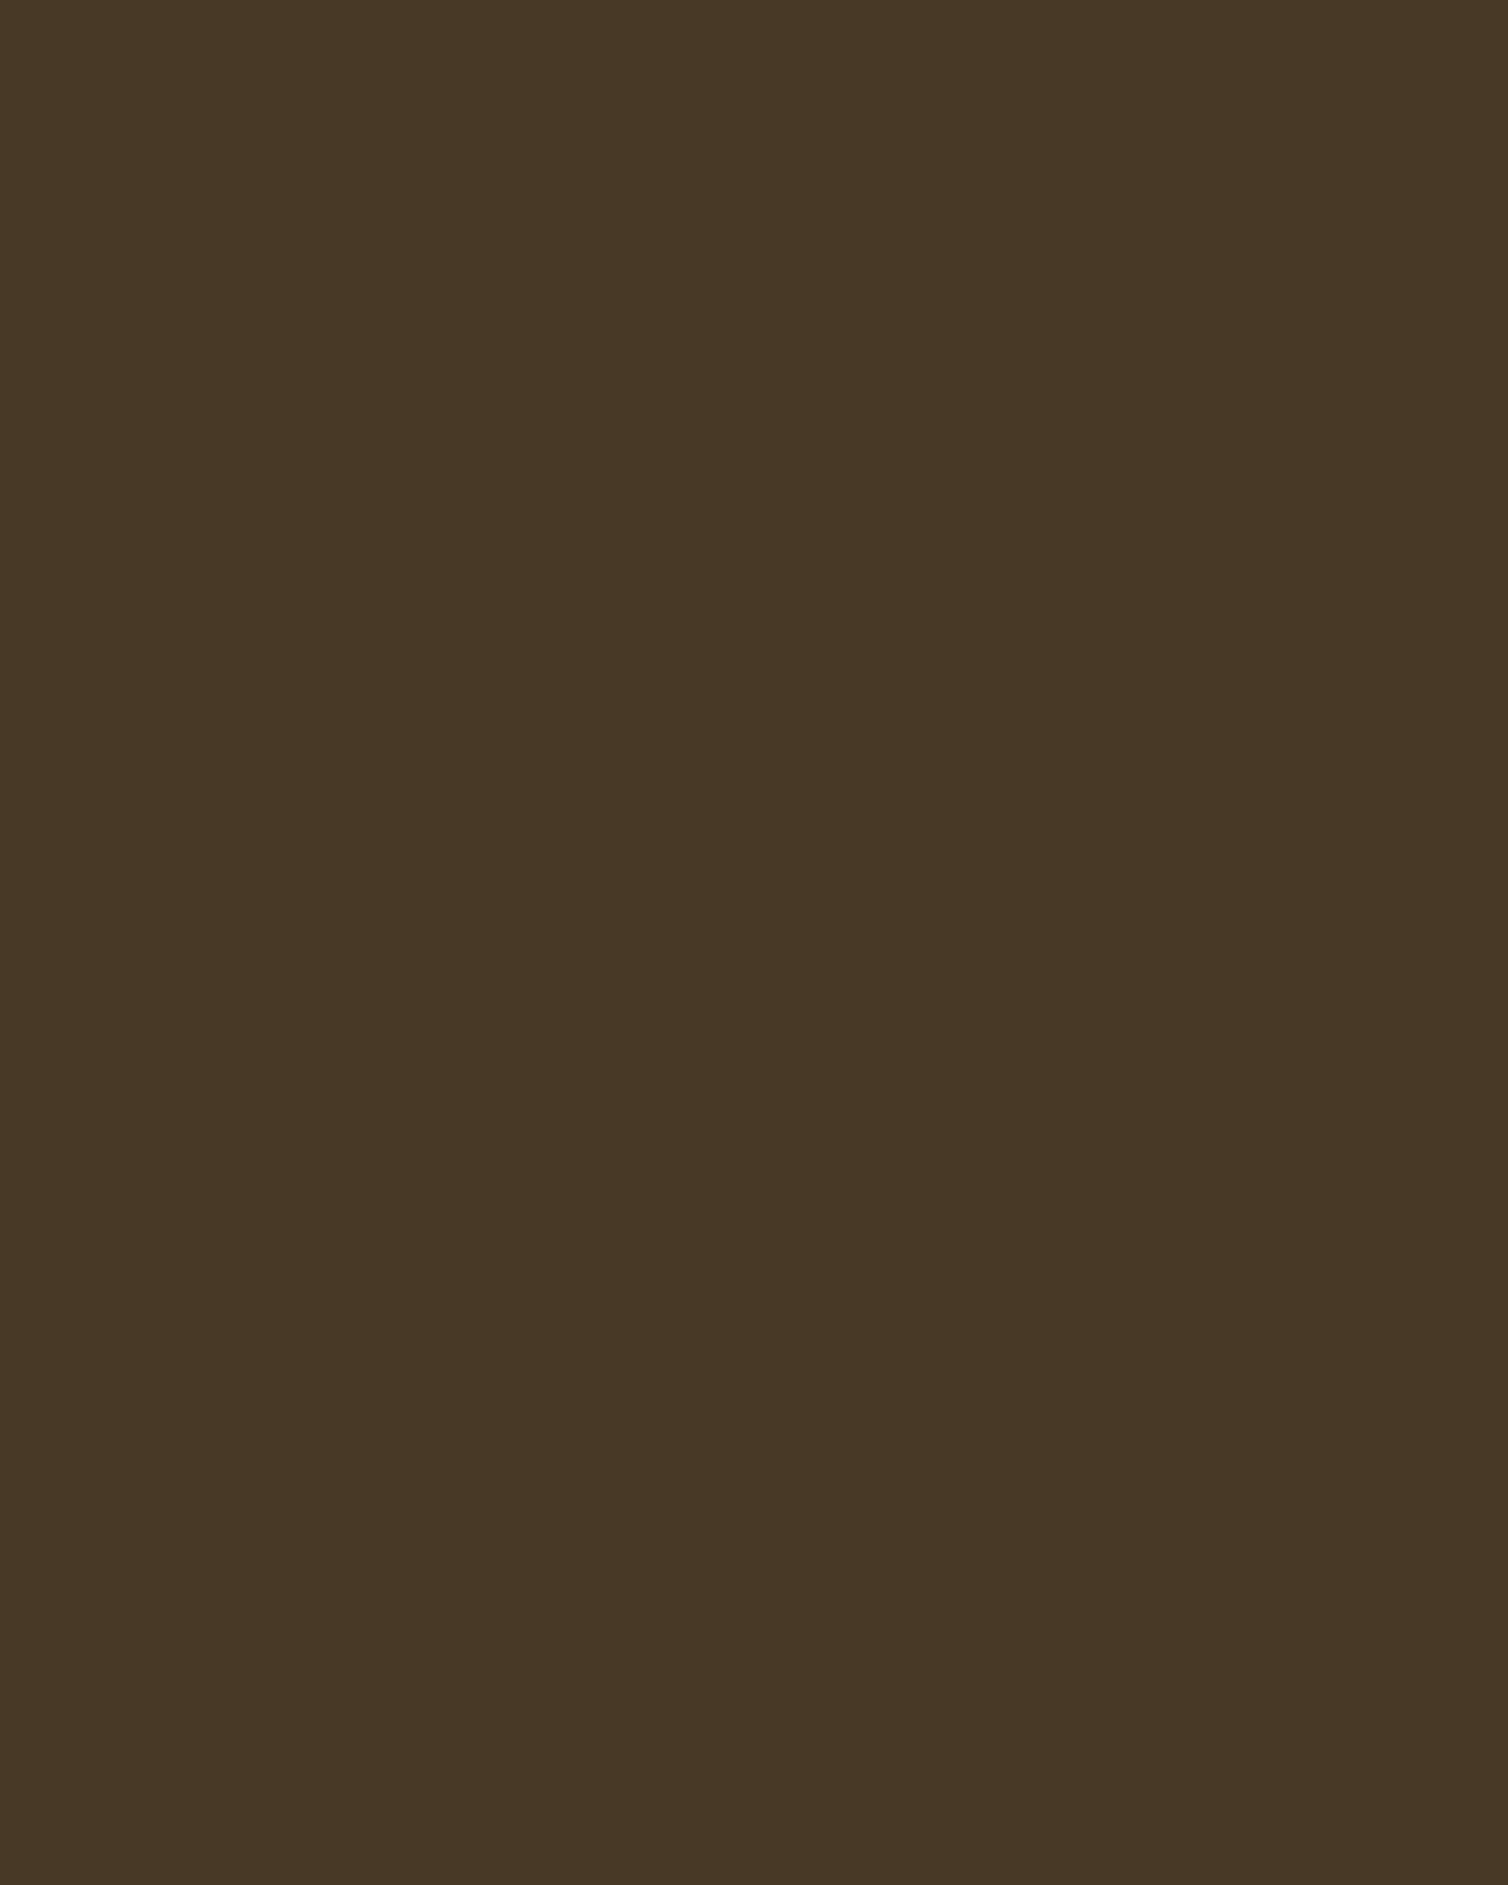 Неизвестный художник. Портрет герцога Голштинского Карла Фридриха (фрагмент). 1720-е (?). Музей «Новый Иерусалим», Истра, Московская область